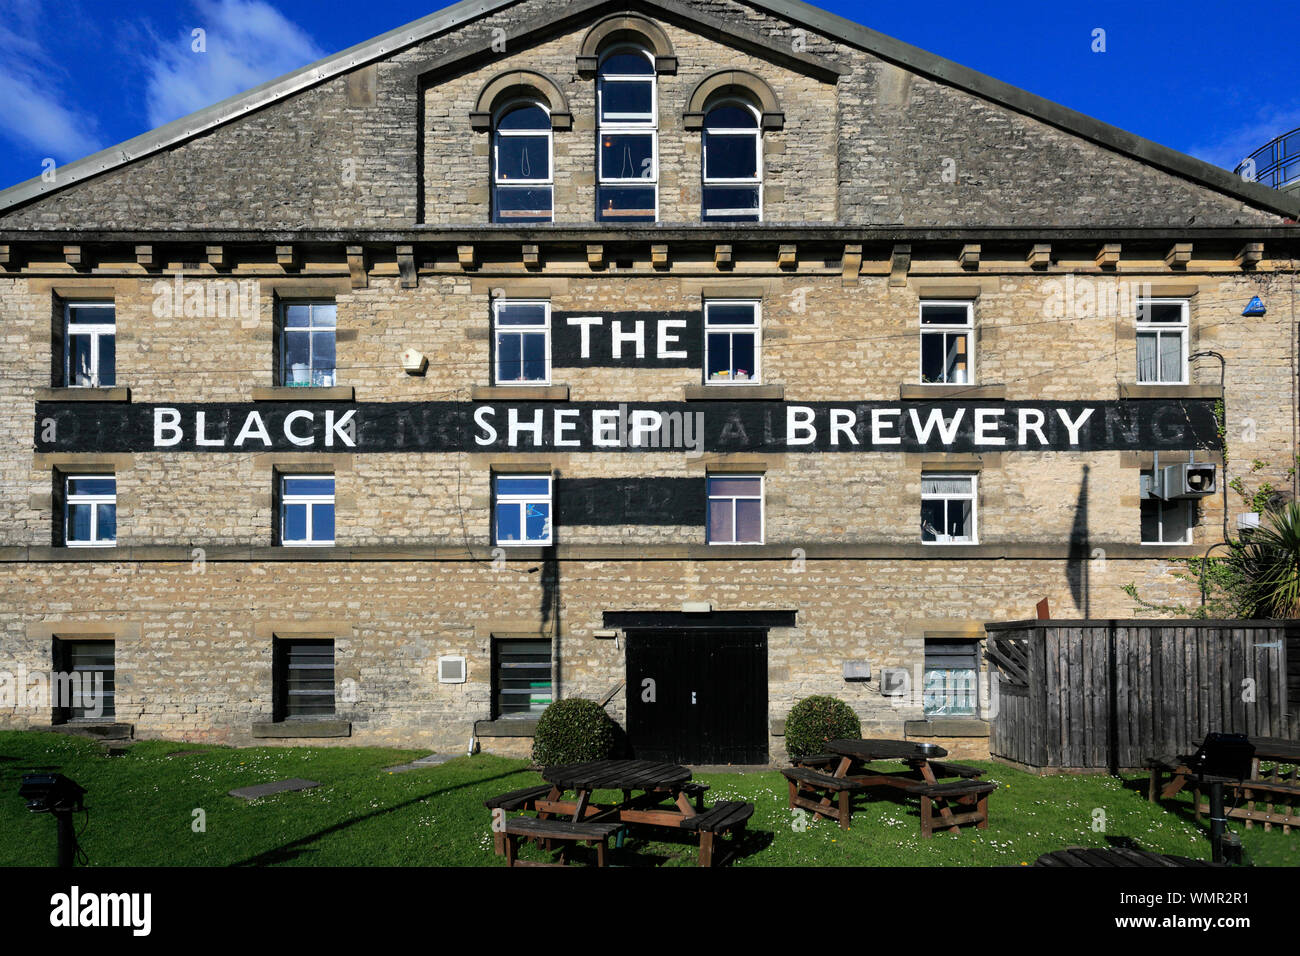 The Black Sheep brewery, Masham town, North Yorkshire, England, UK Stock Photo